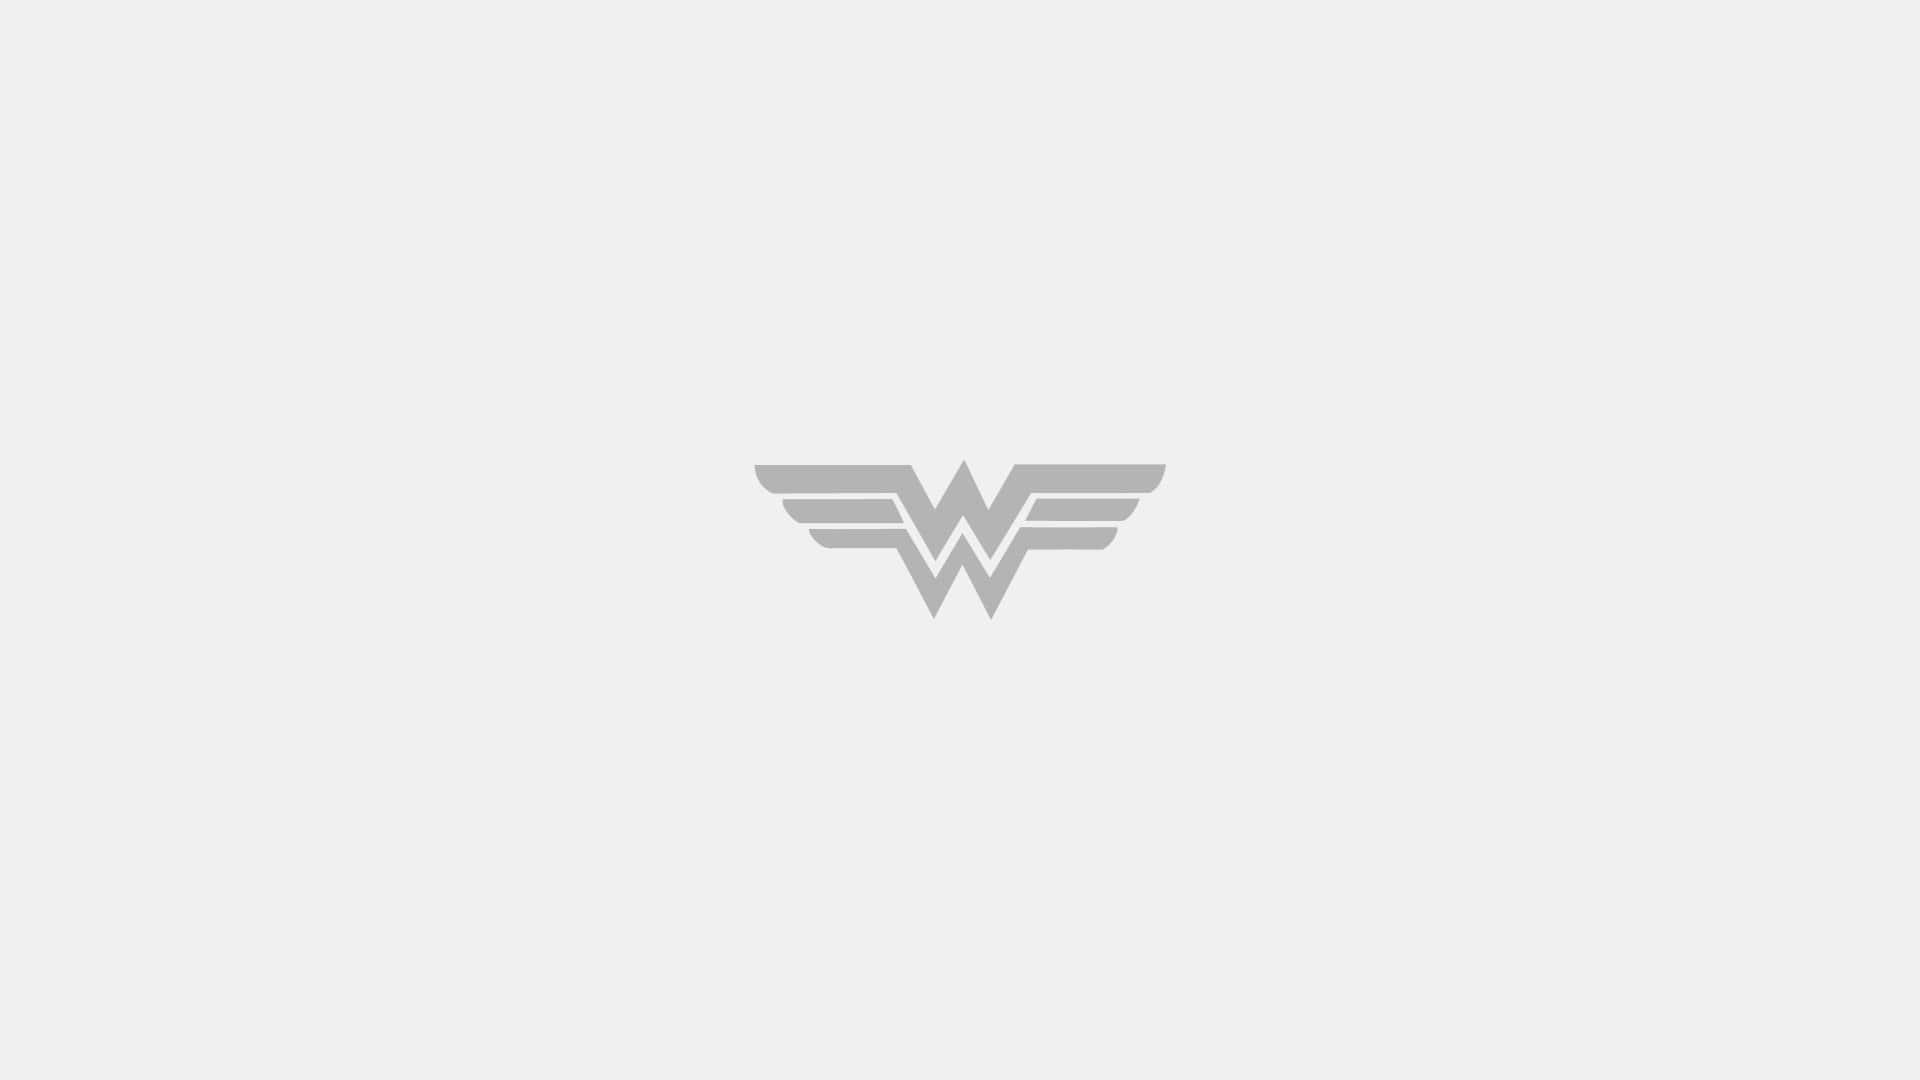 Wonderwoman 1920 X 1080 Bakgrund